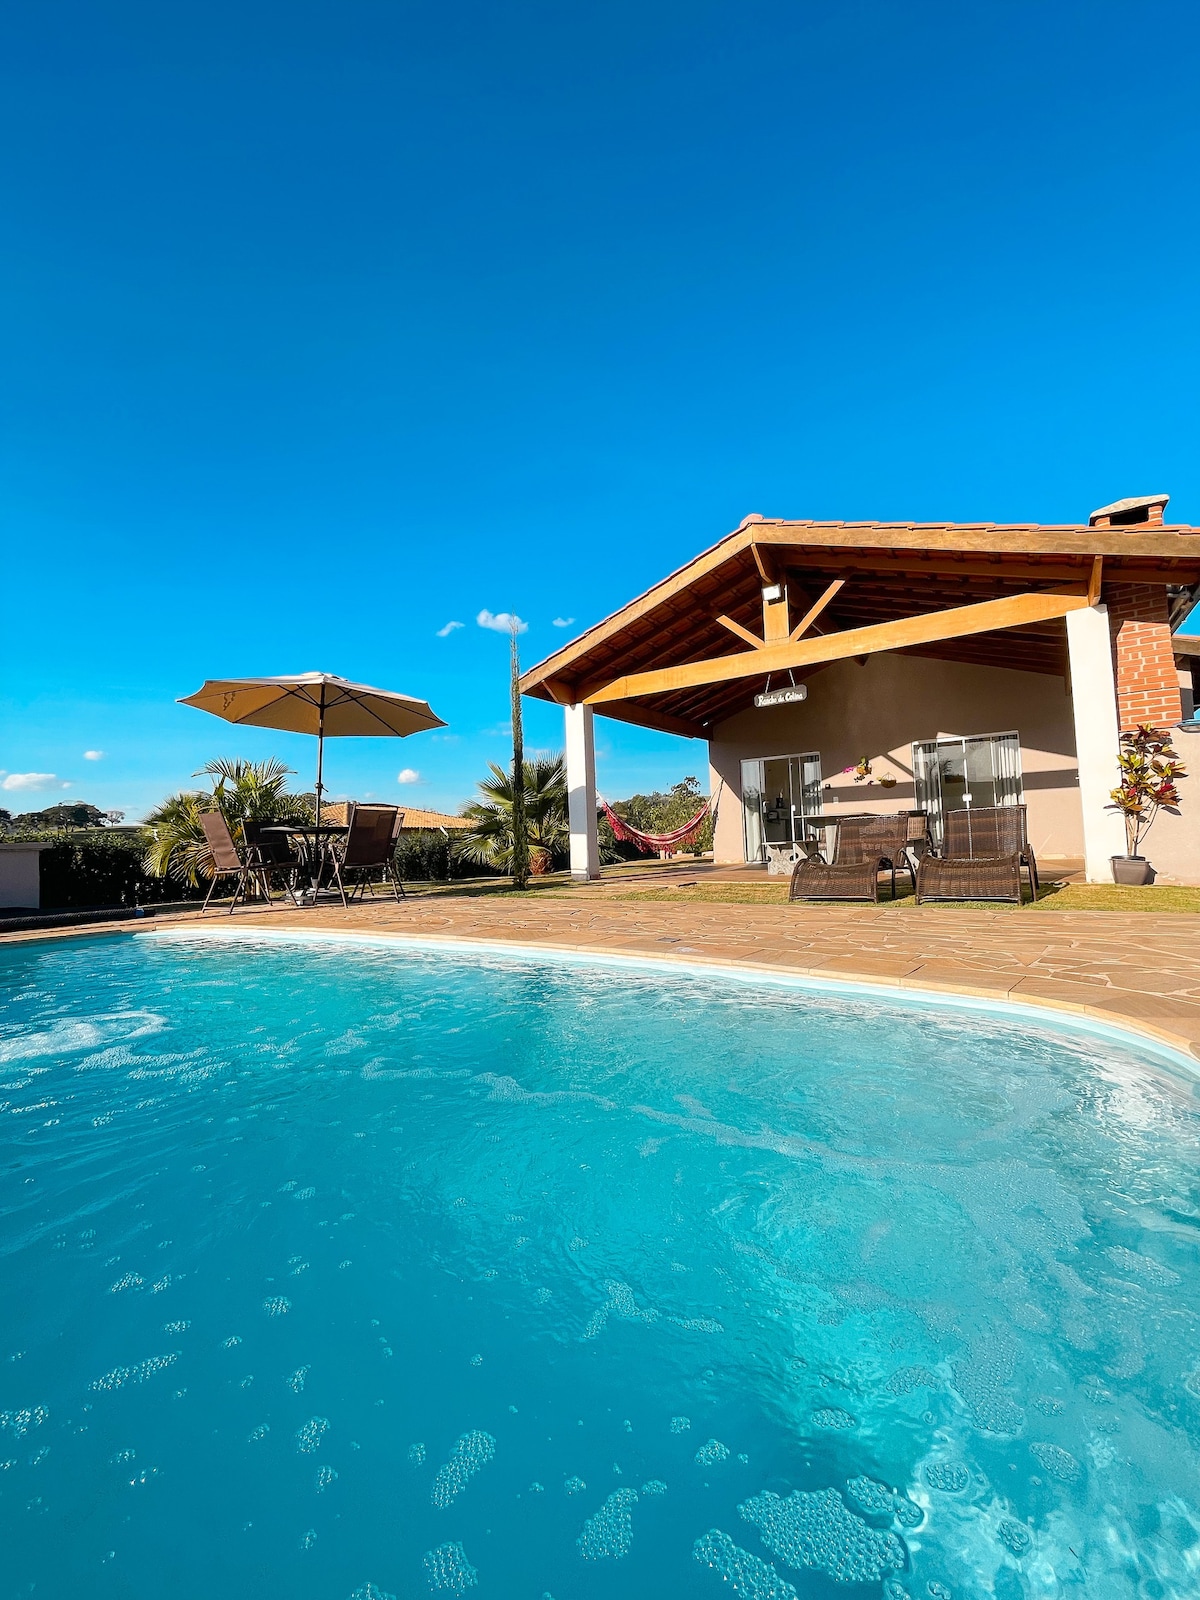 Casa de Campo Nova piscina c/aquecimento solar